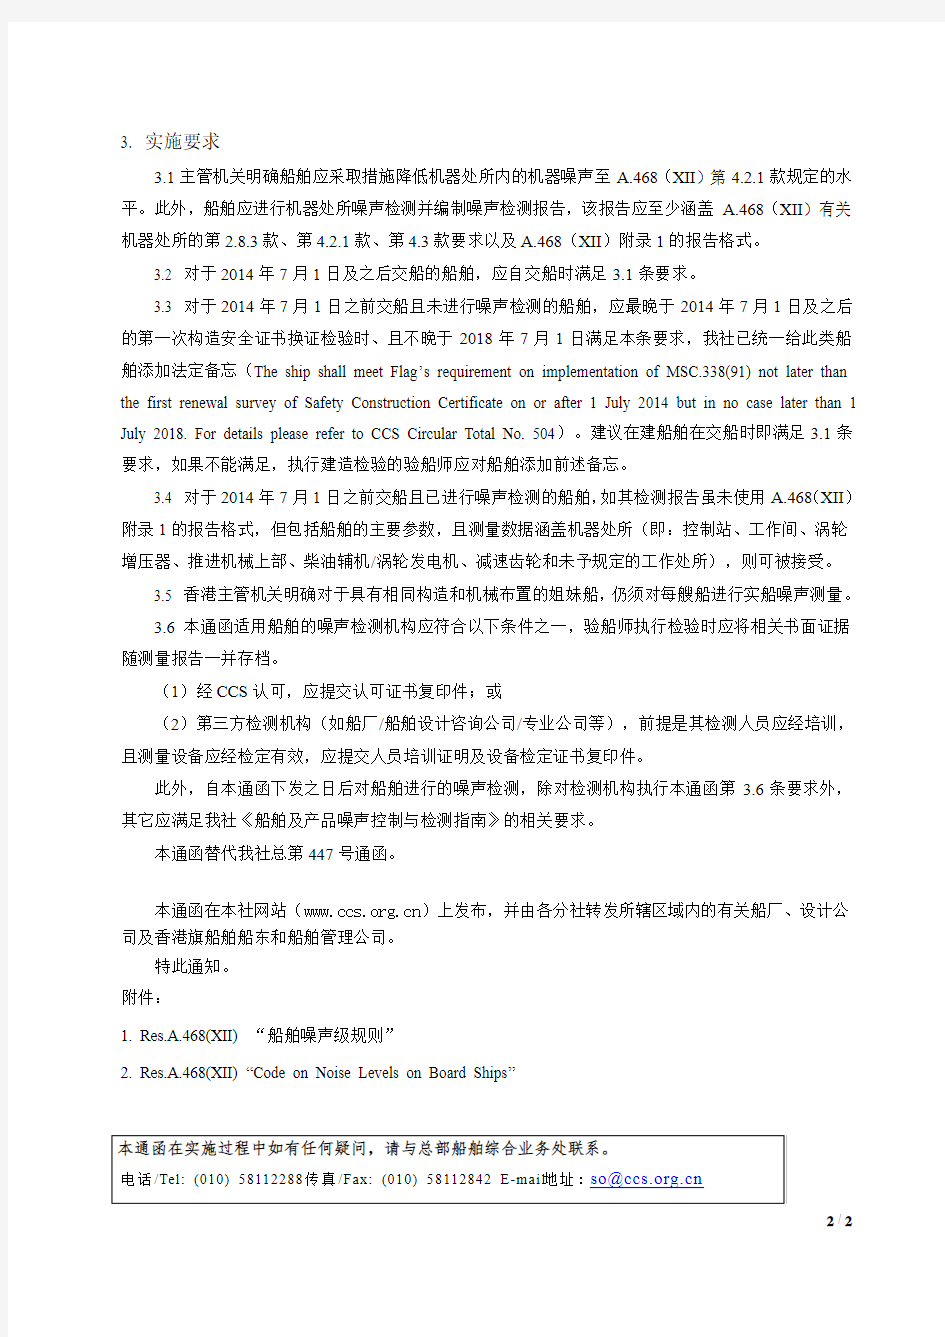 CCS14年通函第20号总第504号关于香港旗现有船舶实施《船上噪声等级规则》(MSC.338(91)决议)的有关要求cn